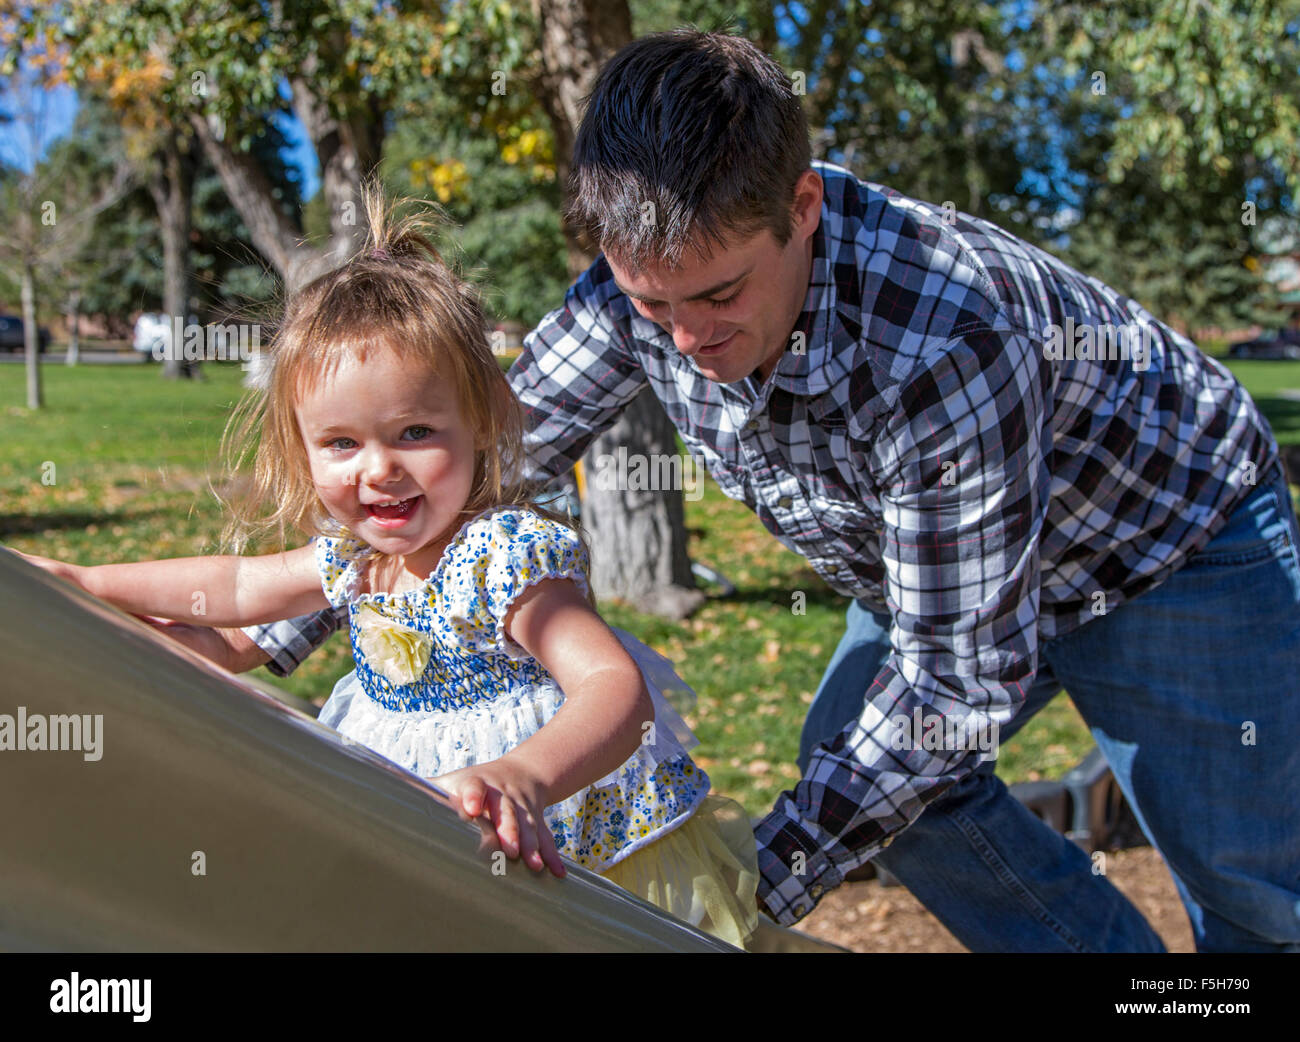 Vater und junge Tochter spielt auf einem verschiebbaren Brett, Park Spielplatz Stockfoto